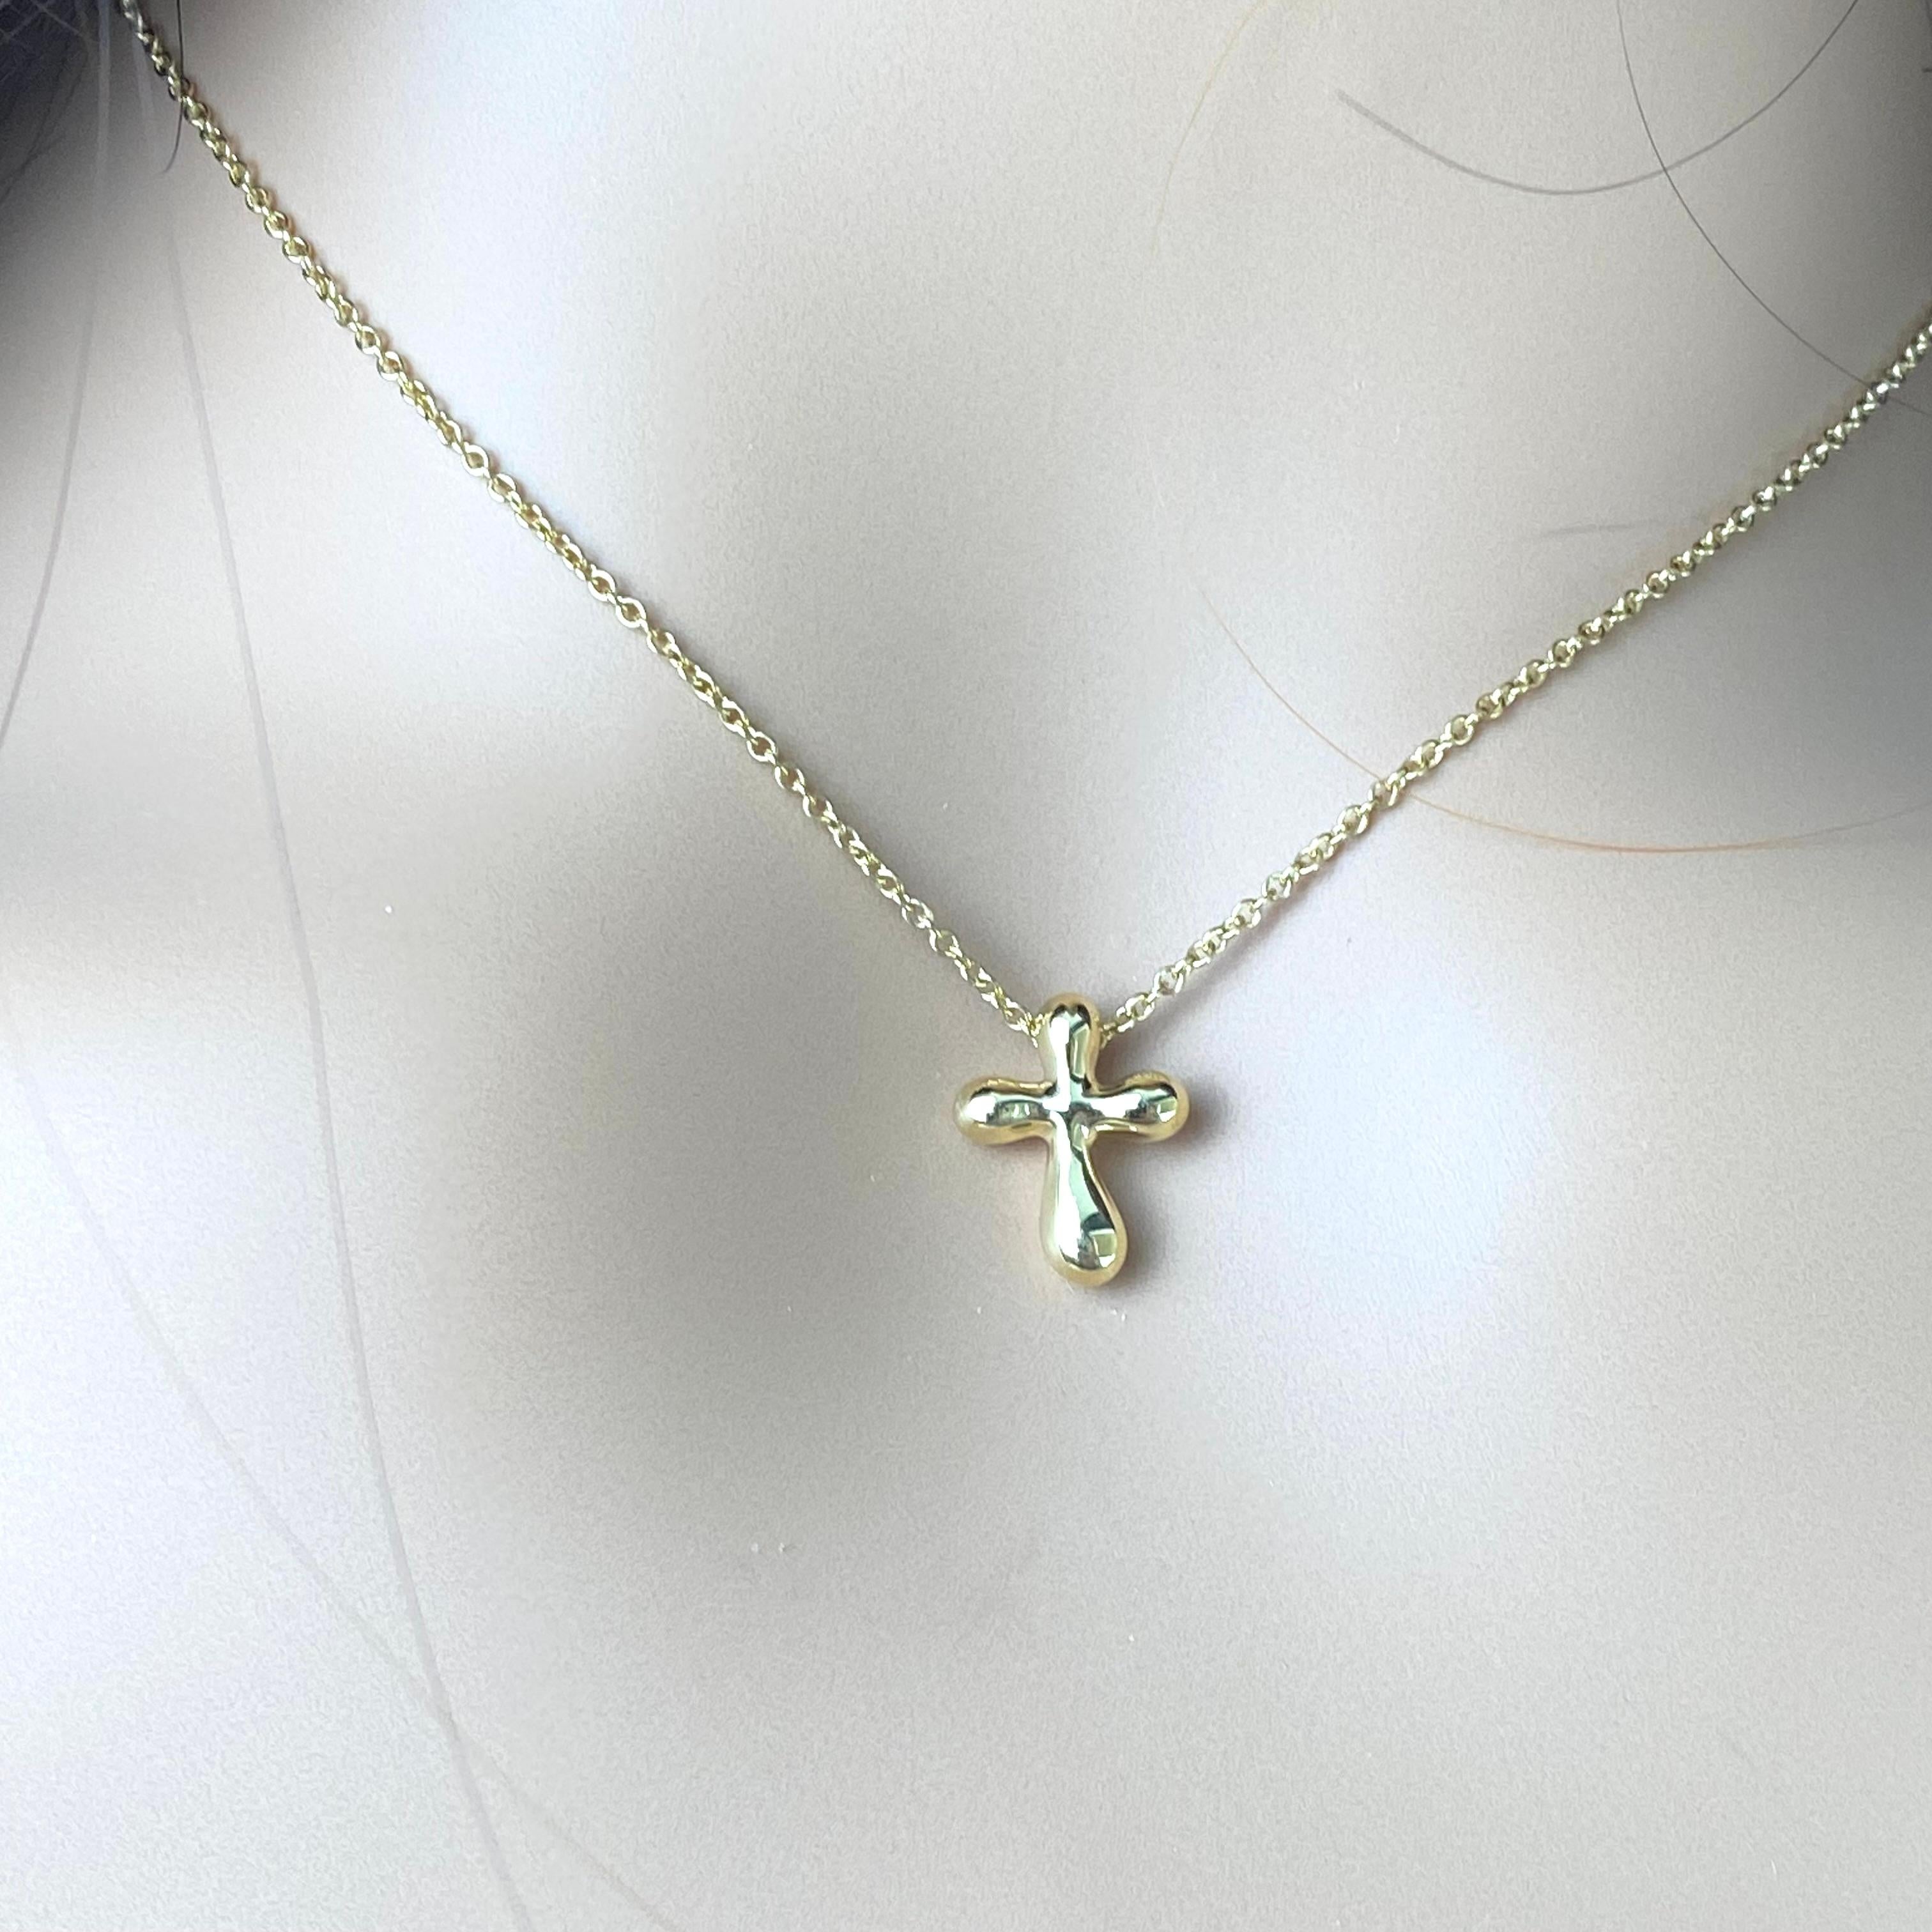 Ajoutez une touche d'élégance intemporelle à votre ensemble avec cet exquis collier à pendentif croix Tiffany & Co Eleg. Réalisé en luxueux or jaune 18 carats, ce collier est un symbole de foi et de sophistication.
Le pendentif présente un délicat